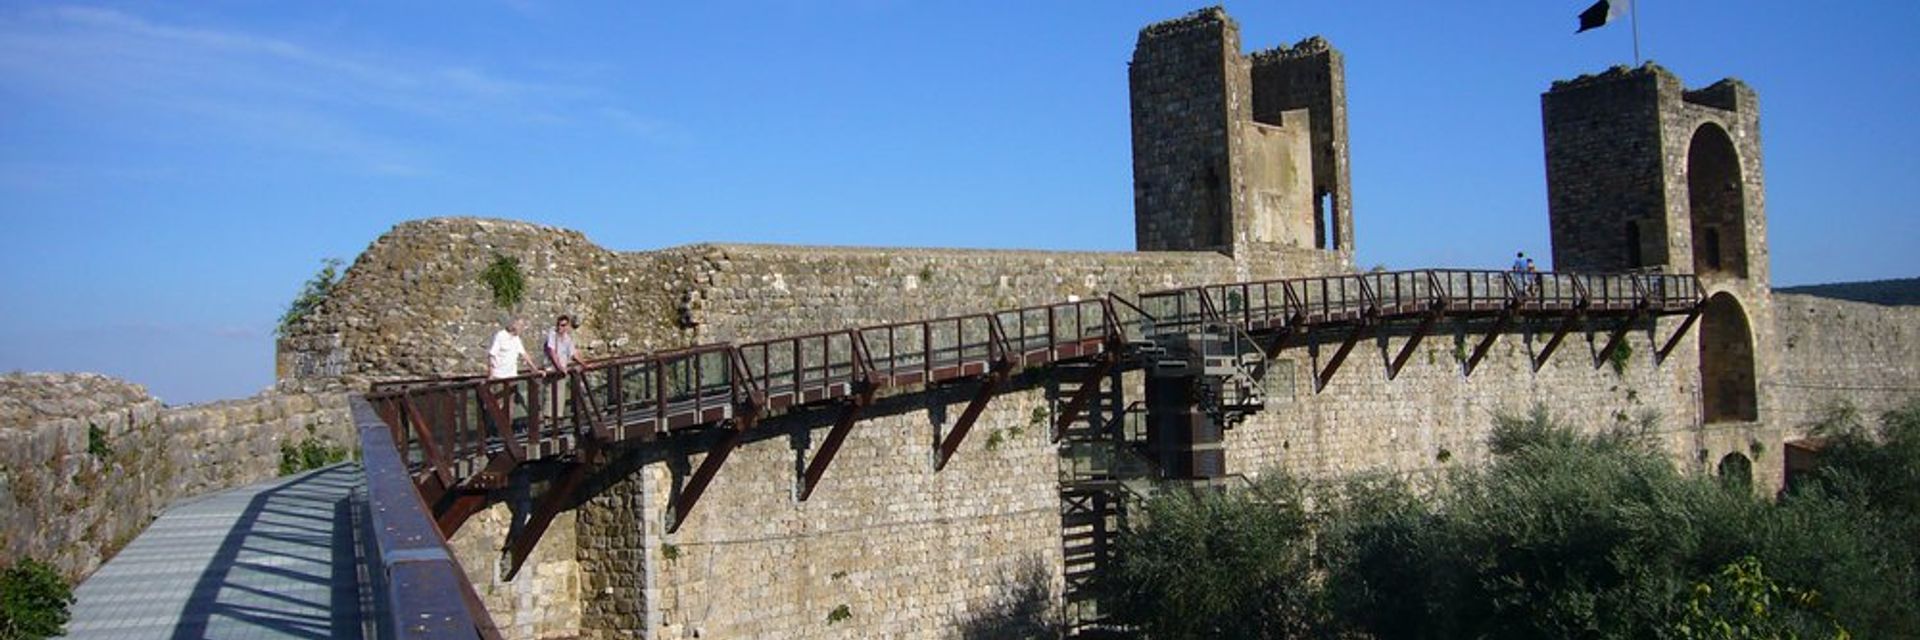 Camminamenti sulla cinta muraria e Museo Monteriggioni in Arme